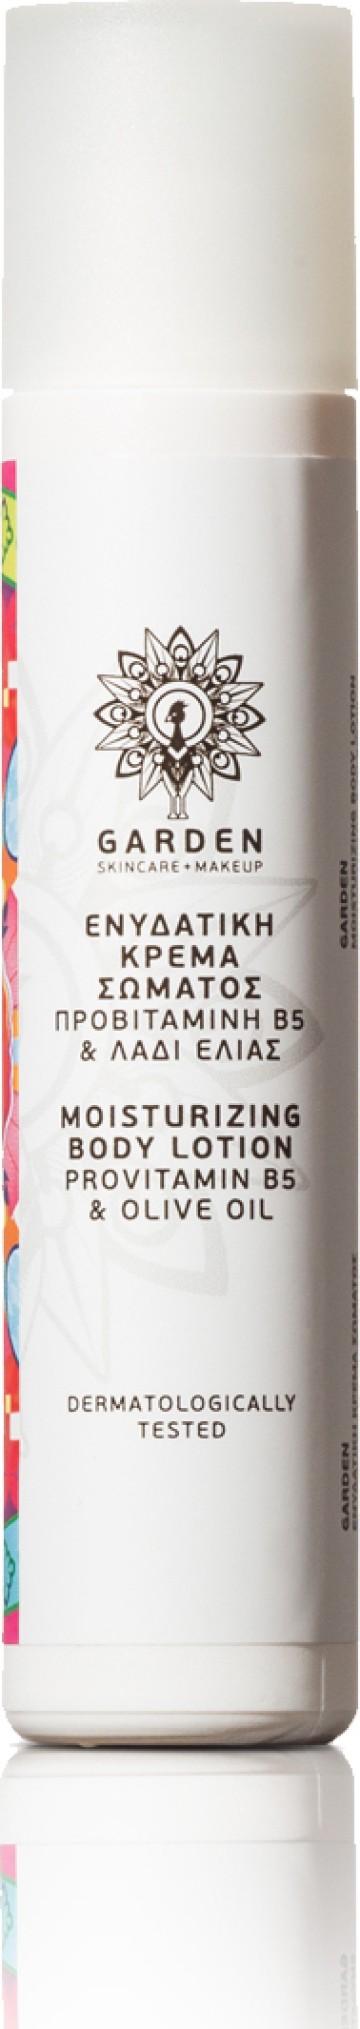 Crema corpo idratante Garden con probiotici B5 e olio d'oliva 30 ml